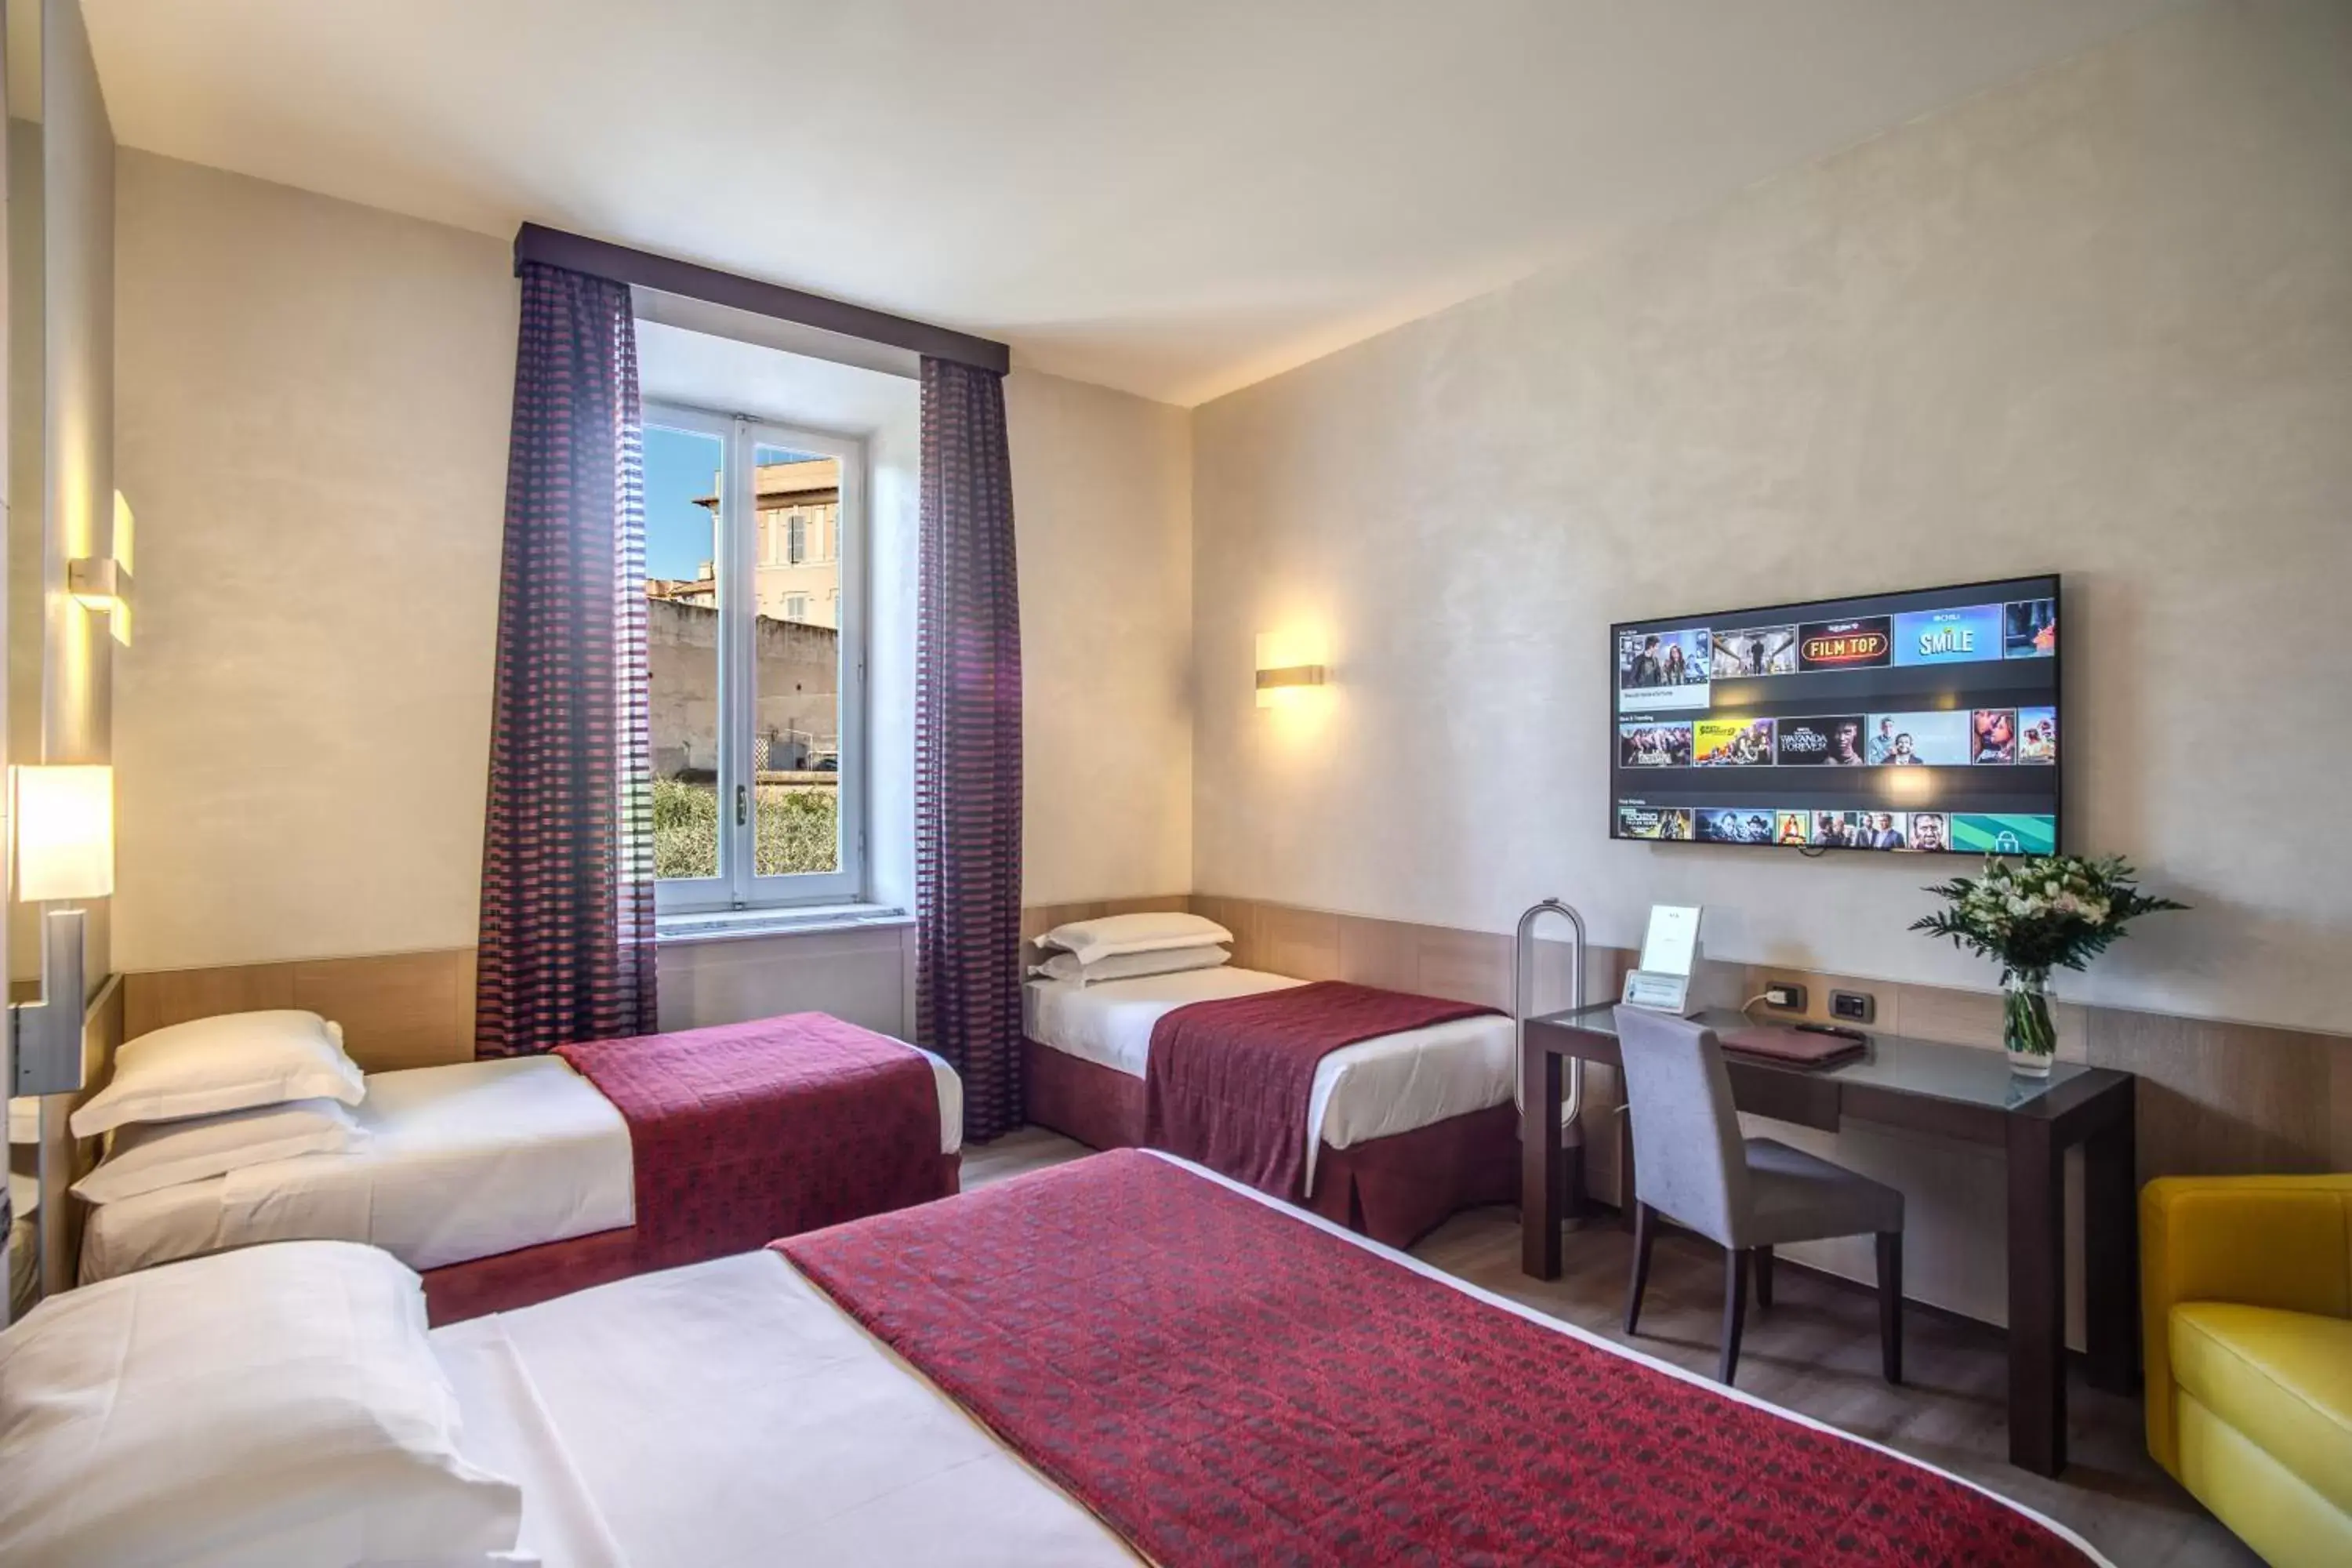 Bedroom, TV/Entertainment Center in Kolbe Hotel Rome